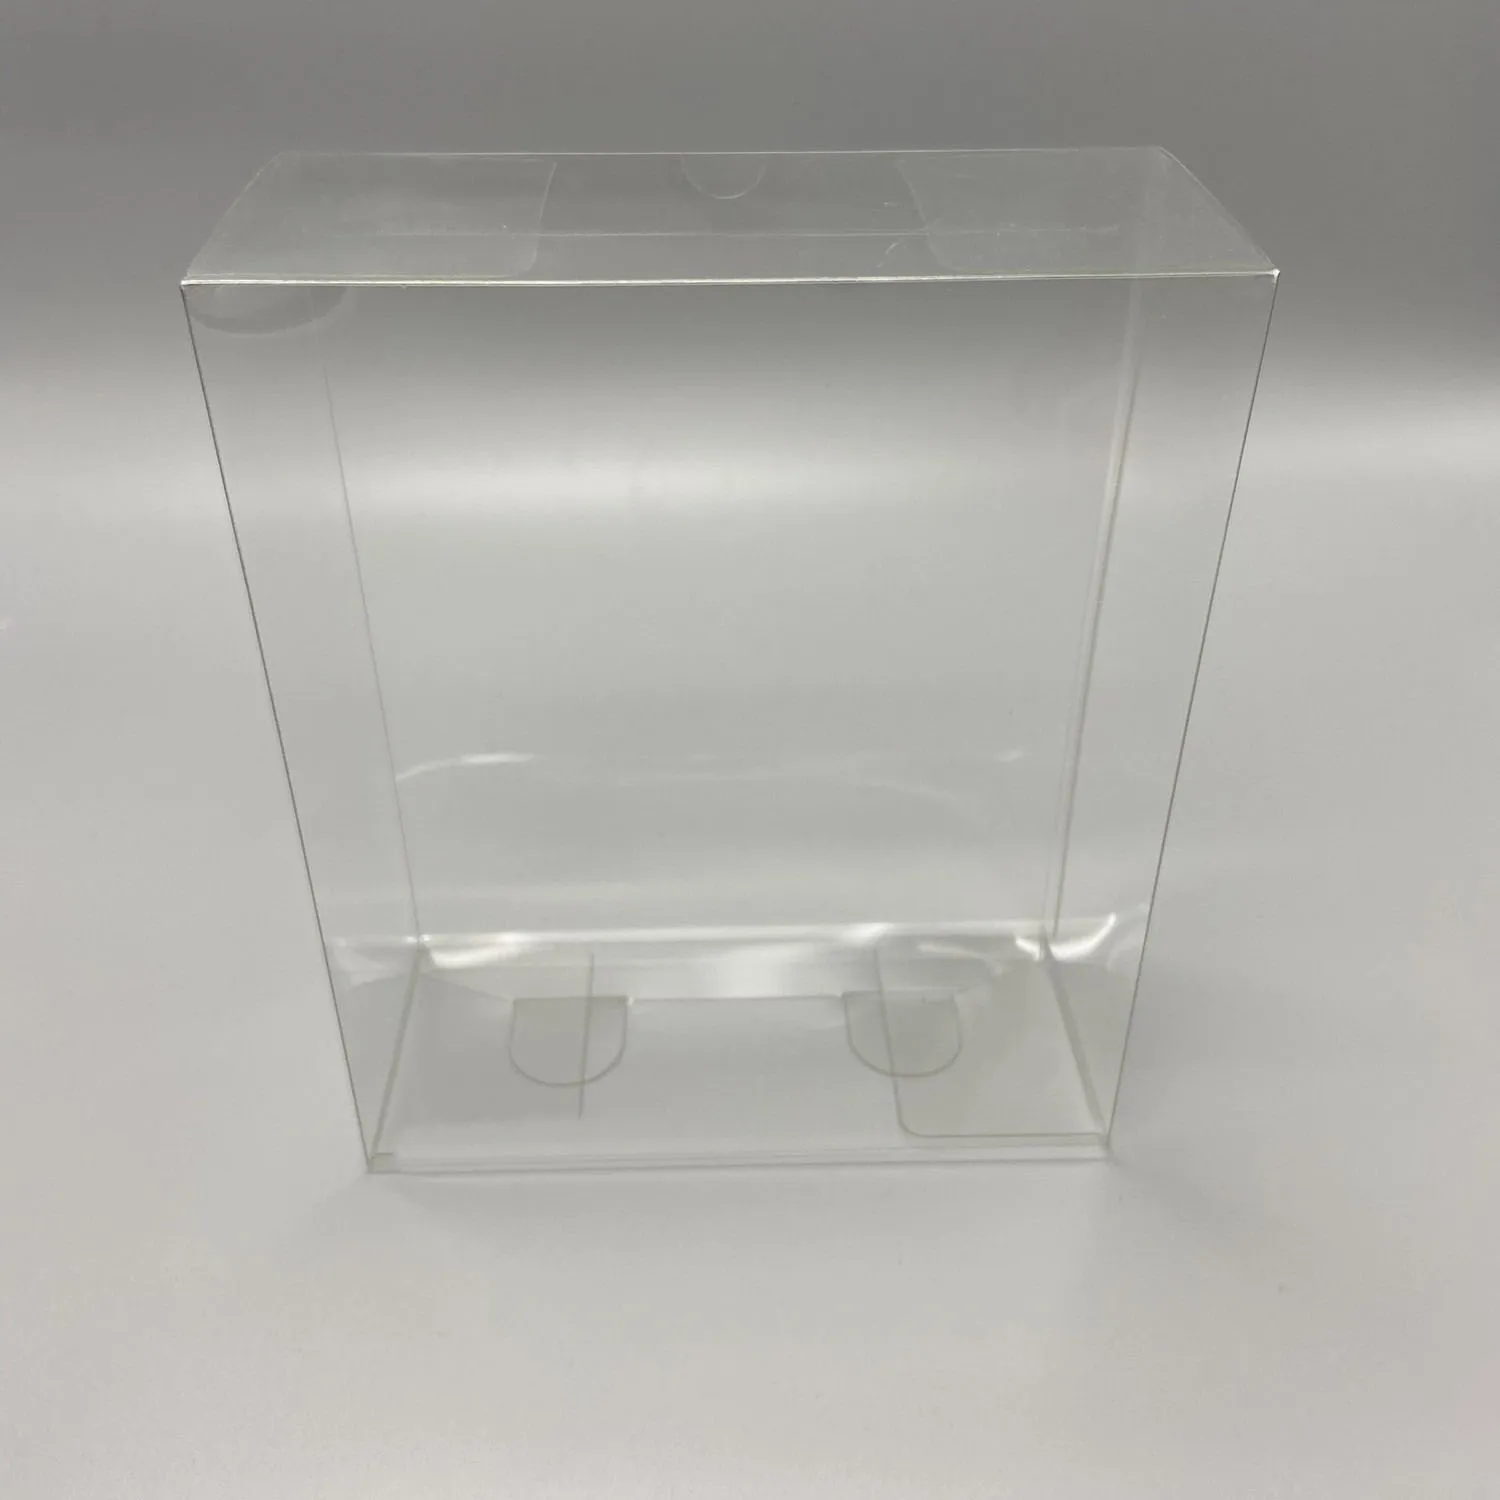 Прозрачный защитный чехол из ПЭТ-пластика для игровой консоли PSPGO Версии EU и HK прозрачный ящик для хранения коллекции дисплеев - 1